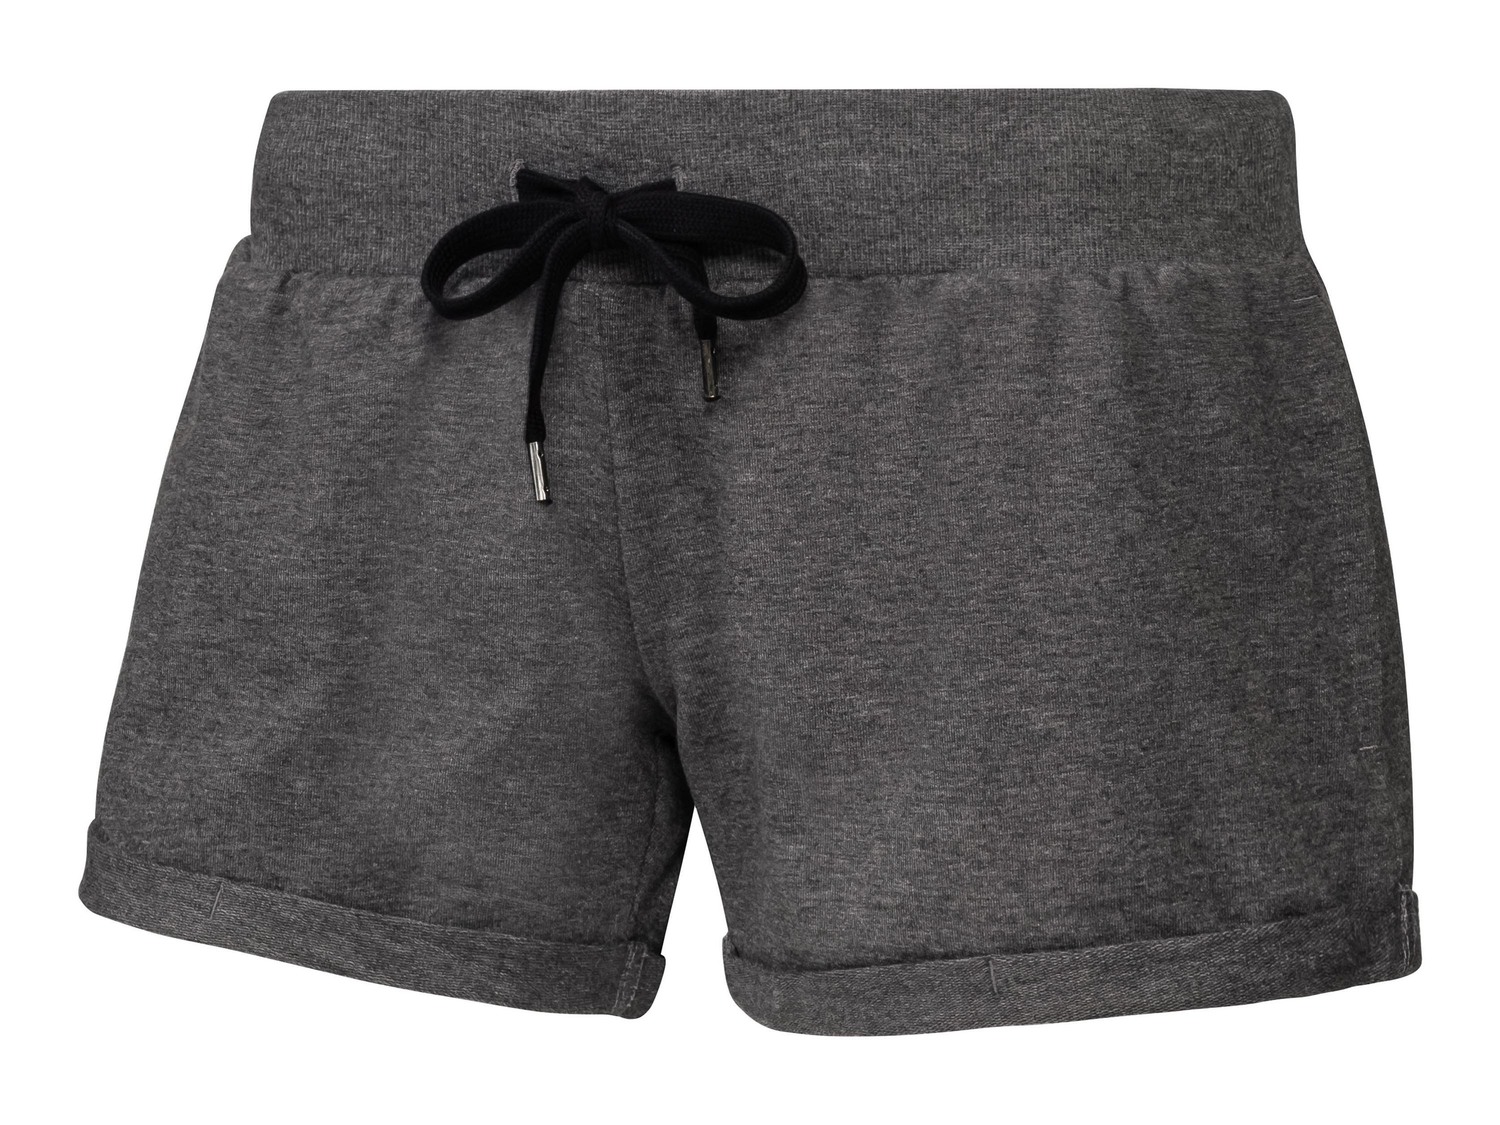 Shorts sportivi da donna Crivit, prezzo 5.99 &#8364;  
Misure: S-L
- Oeko tex NEW